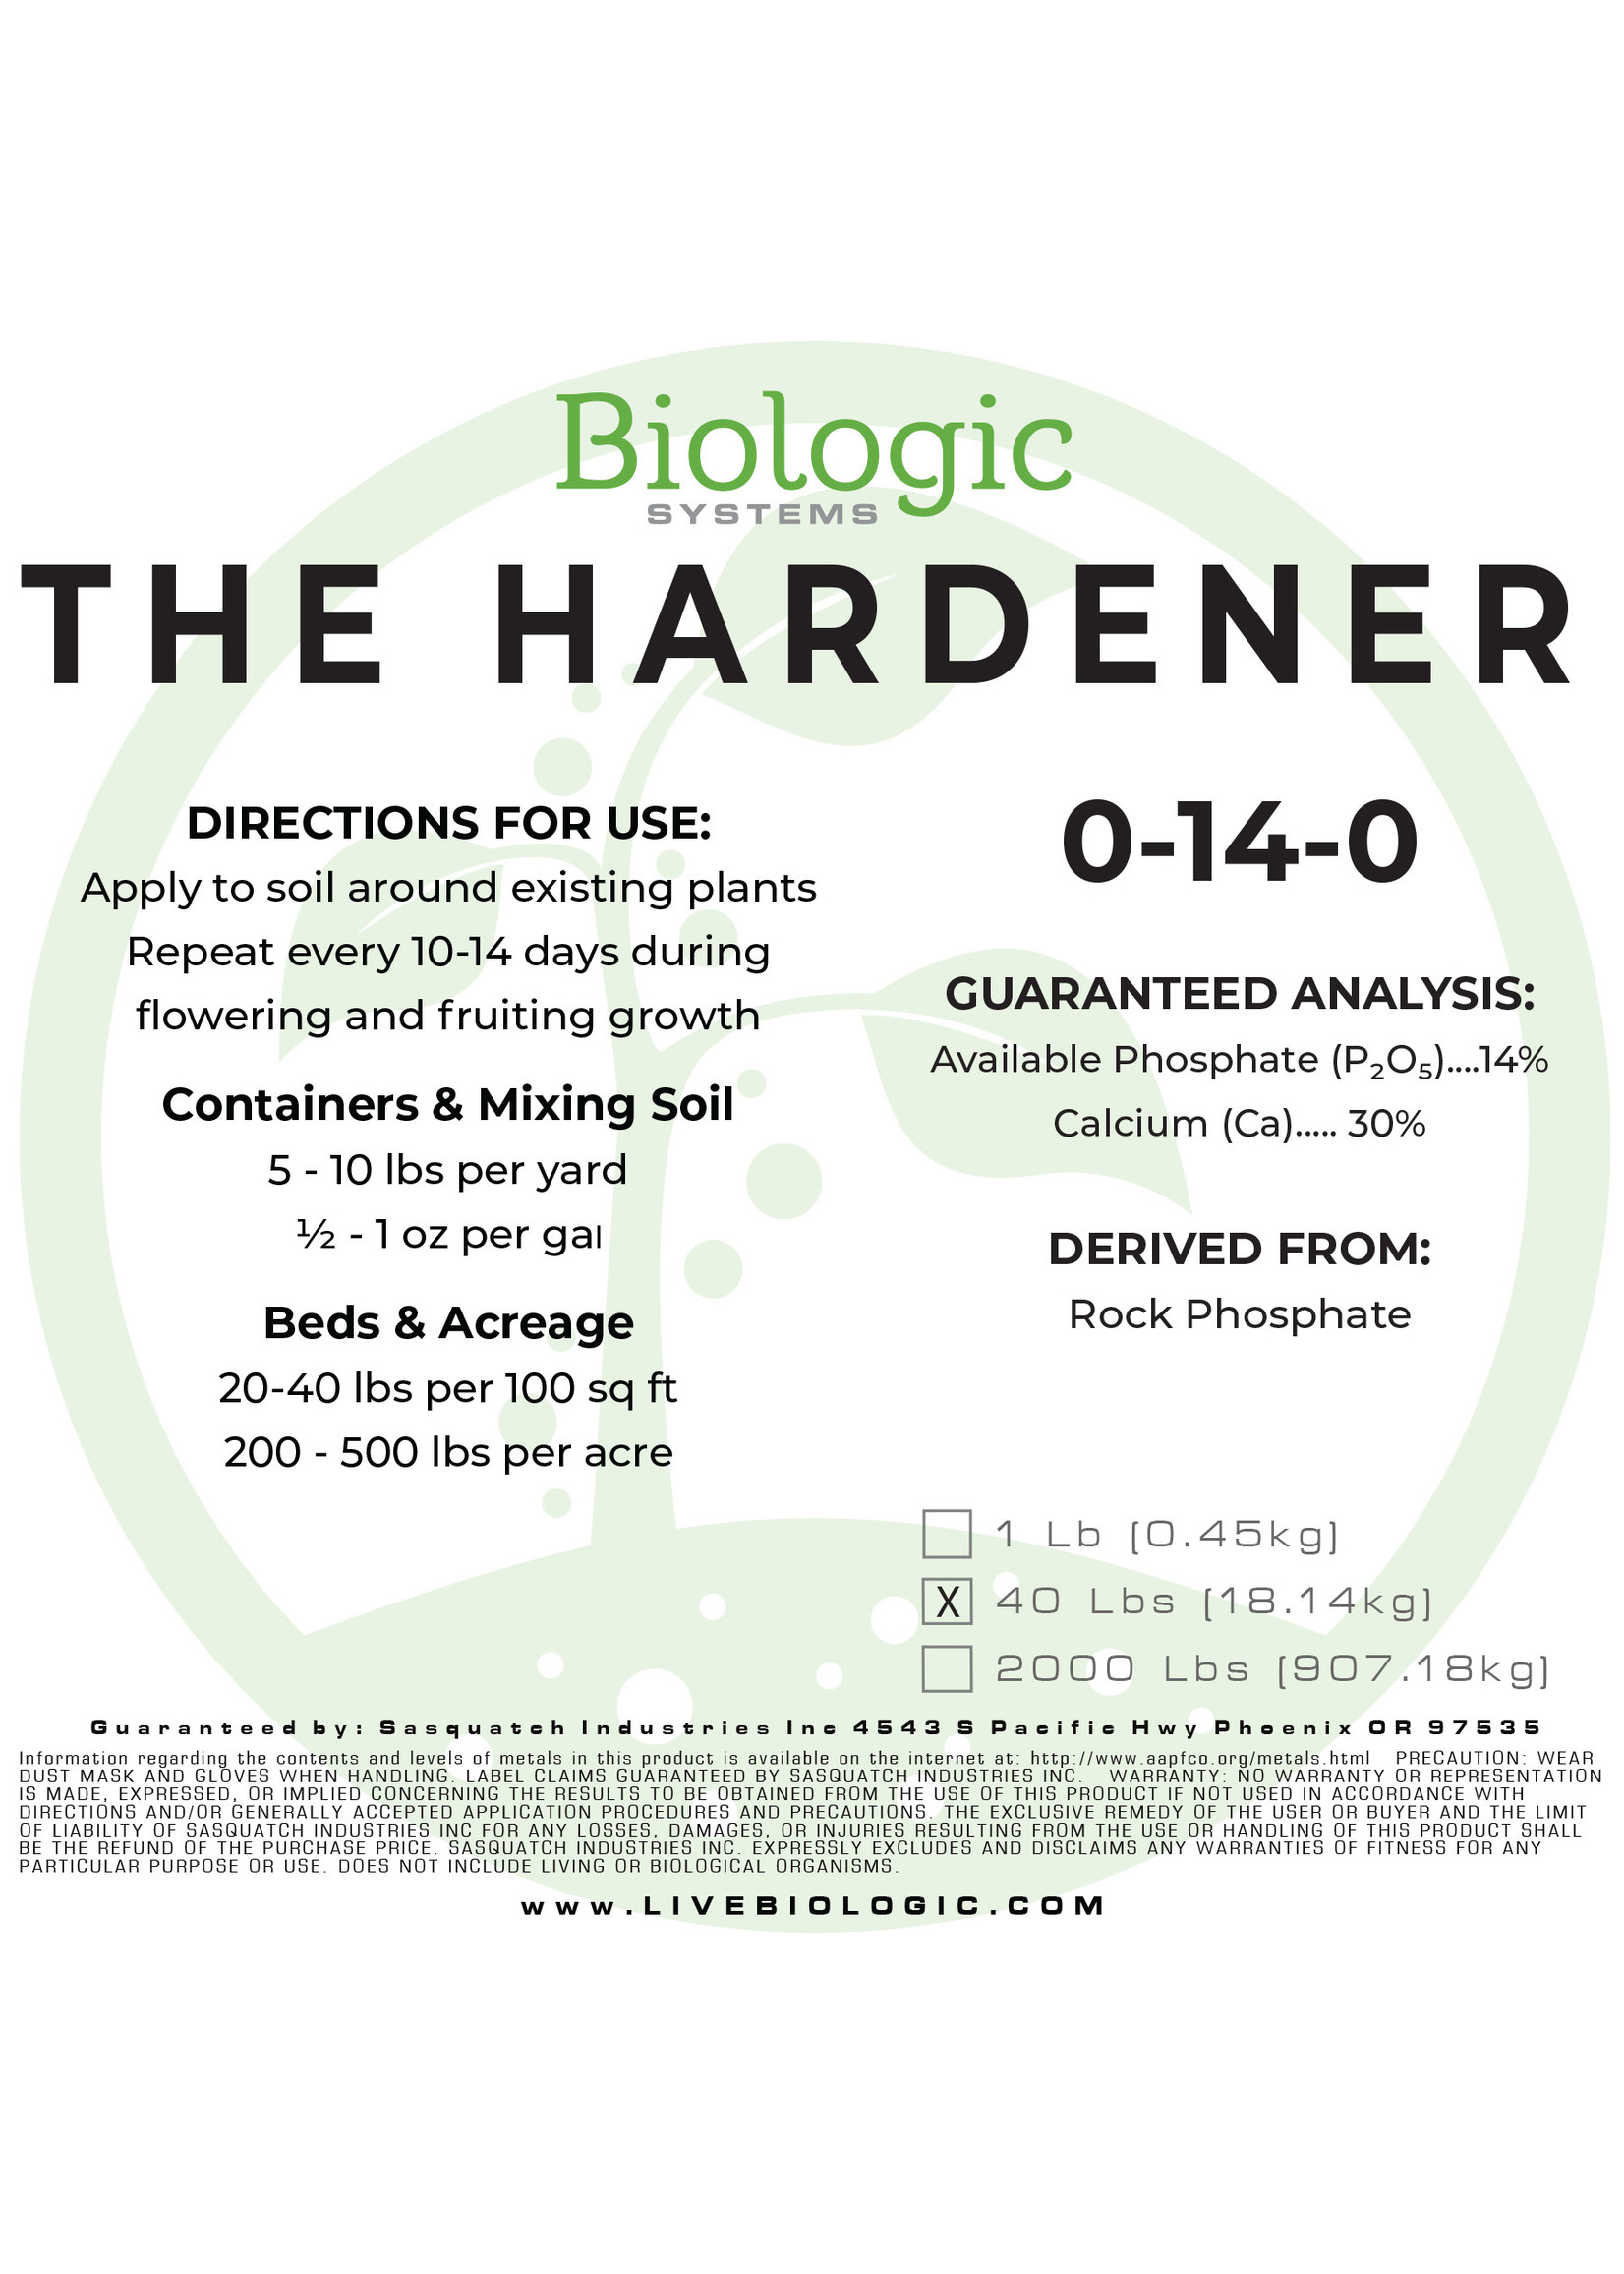 Biologic Systems The Hardener 50 lb Bag